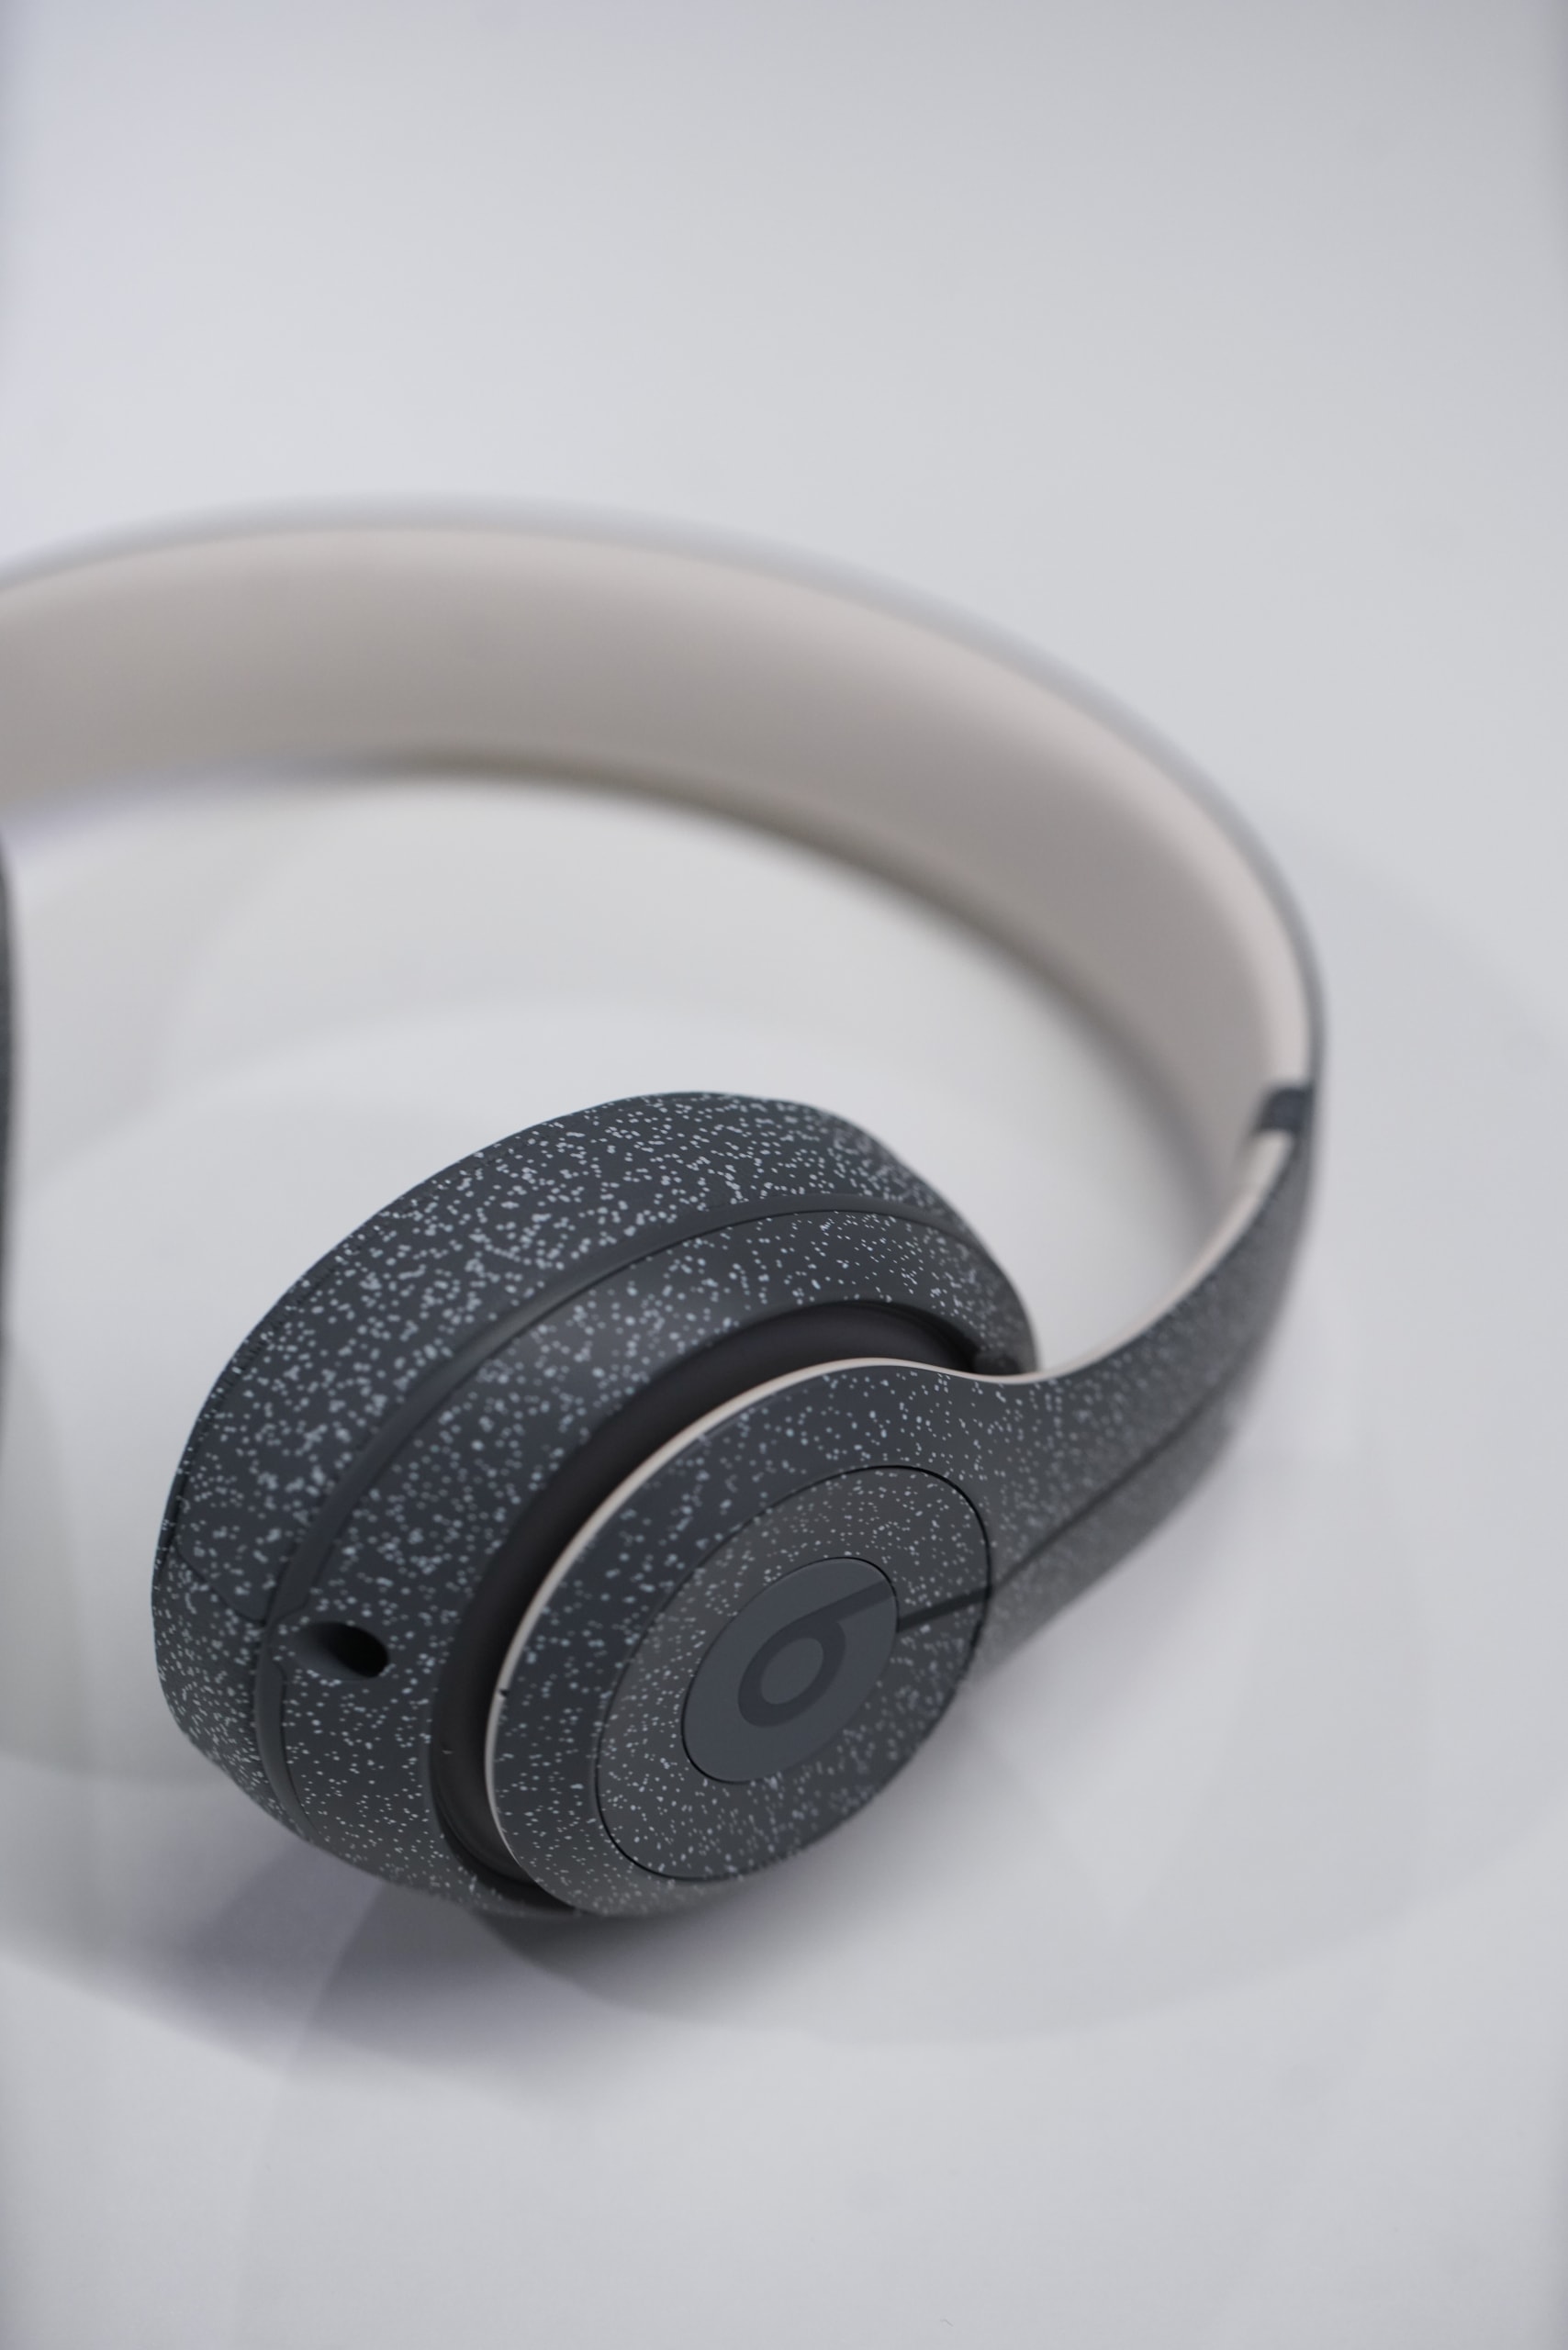 獨家近賞 A-COLD-WALL* x Beats Studio3 Wireless 最新聯名耳機